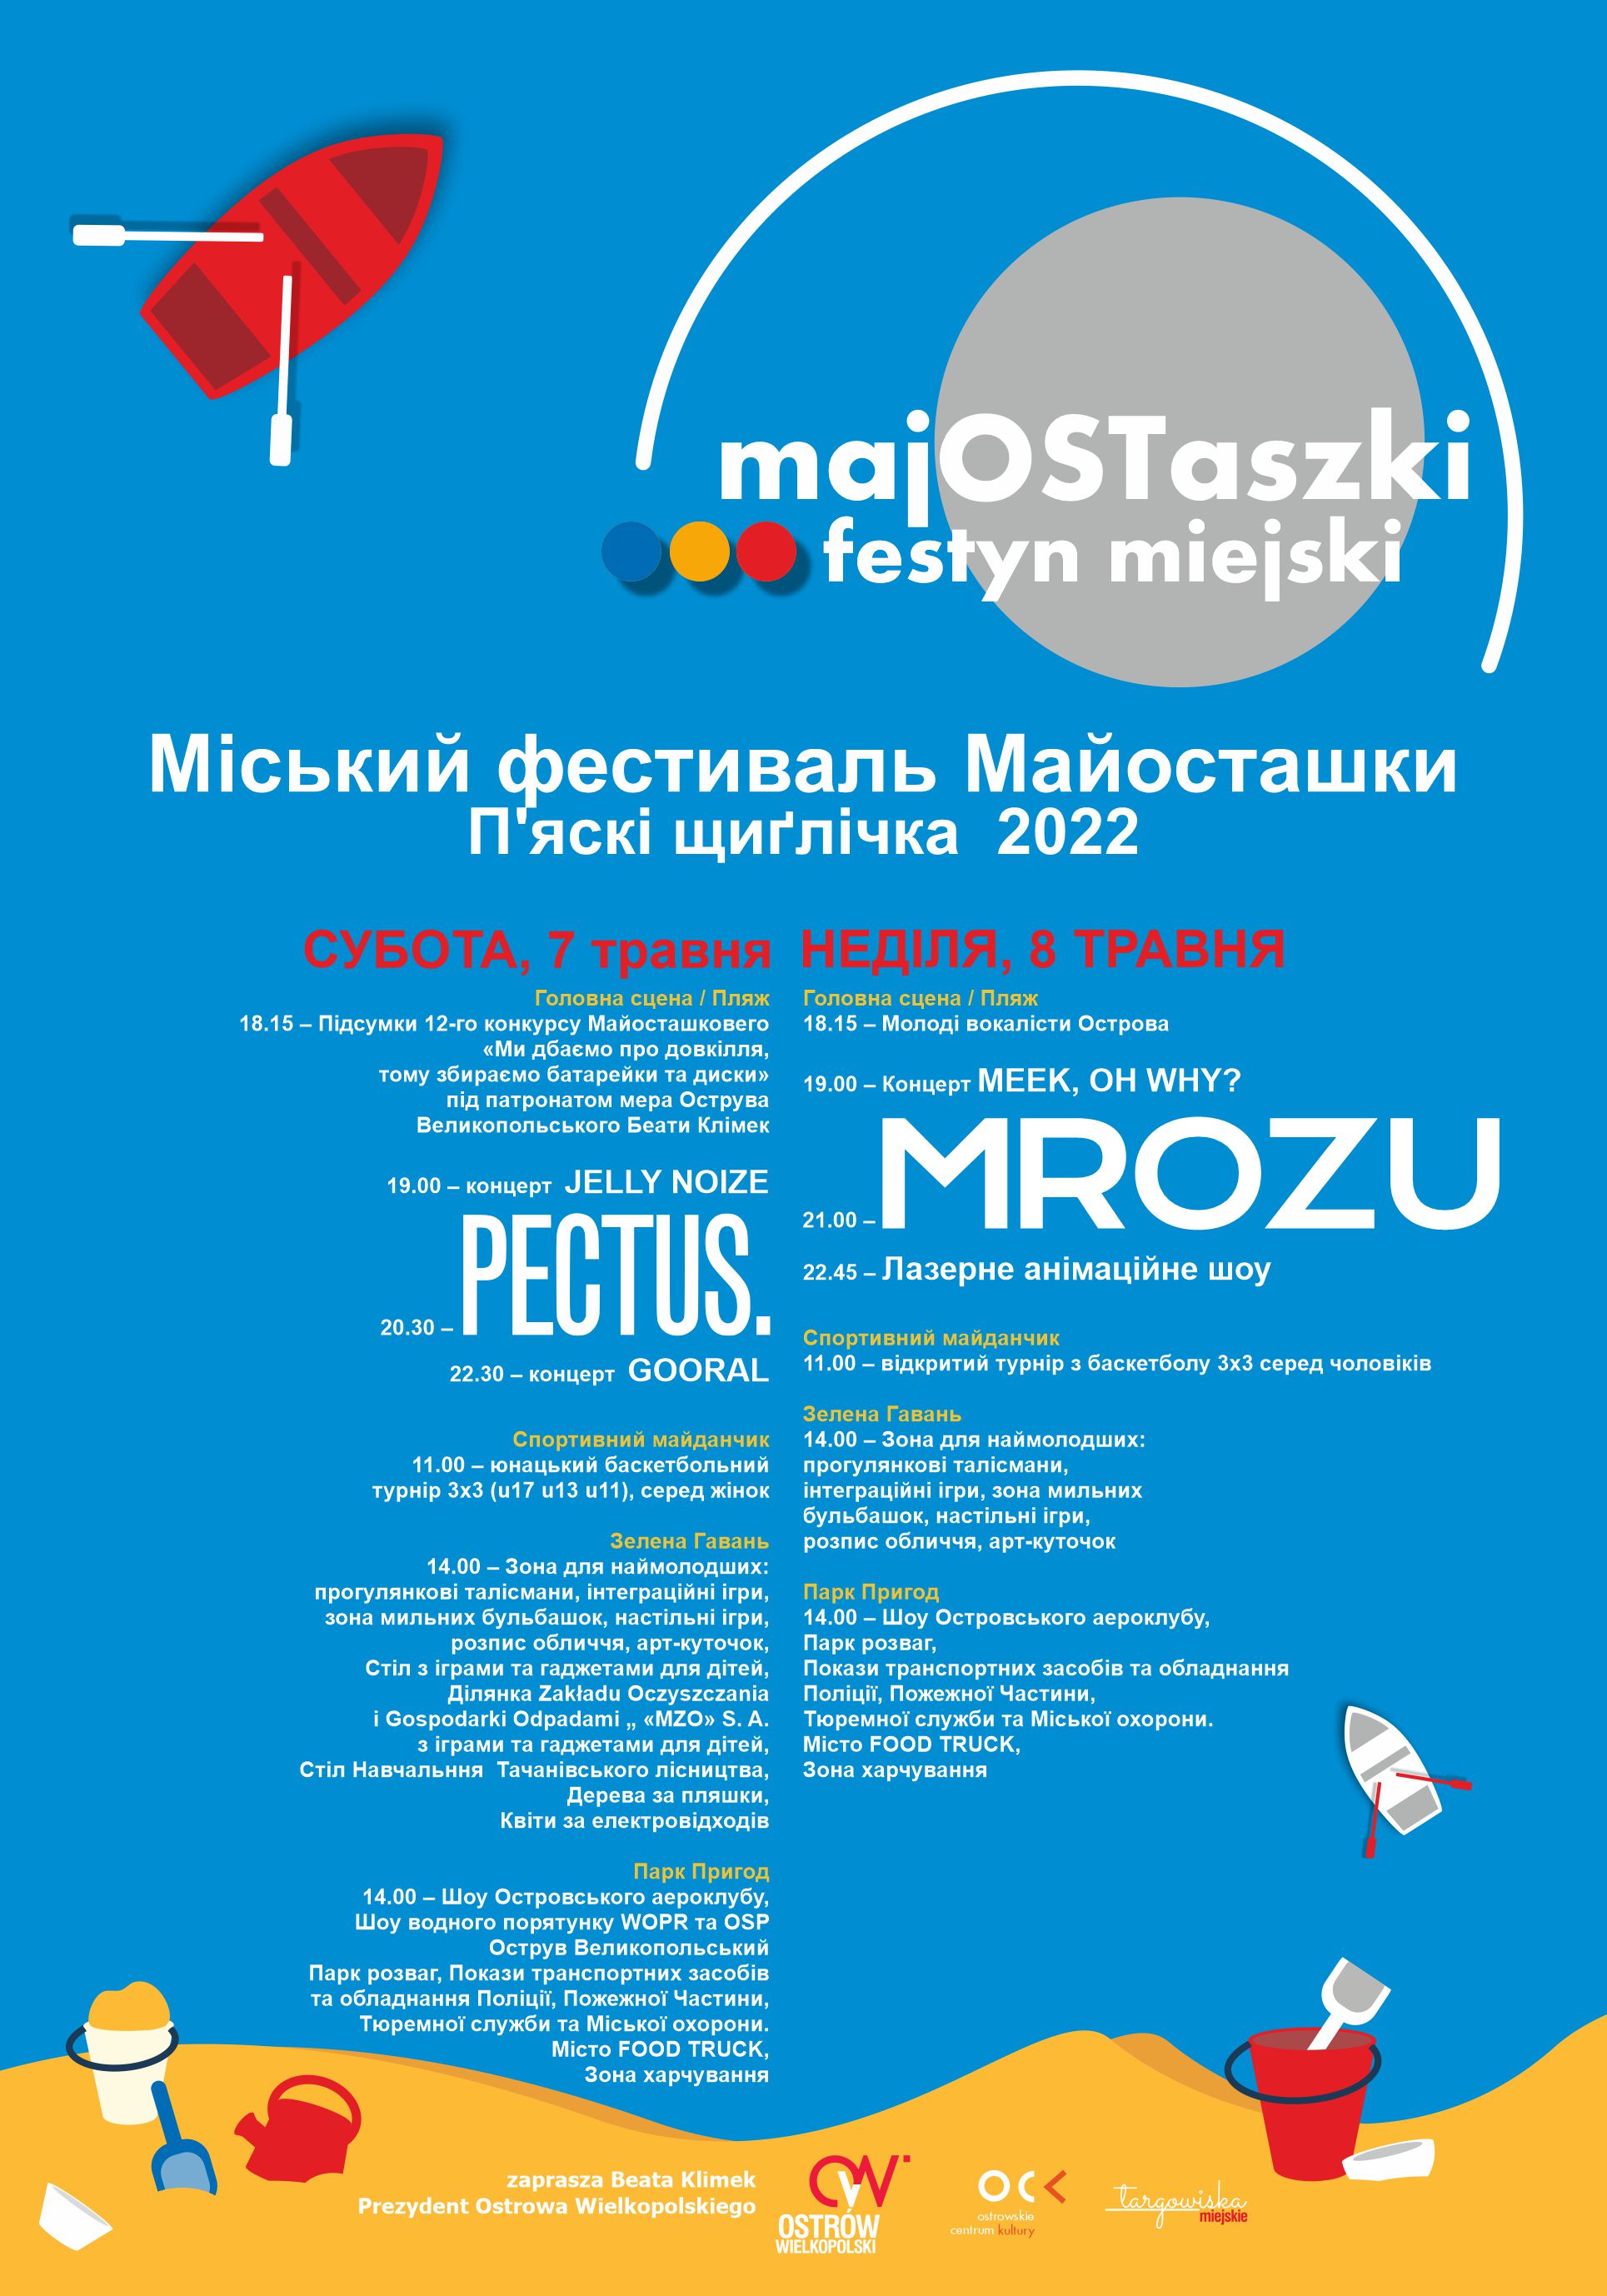 Majostaszki festyn miejski - Міський фестиваль Майосташки